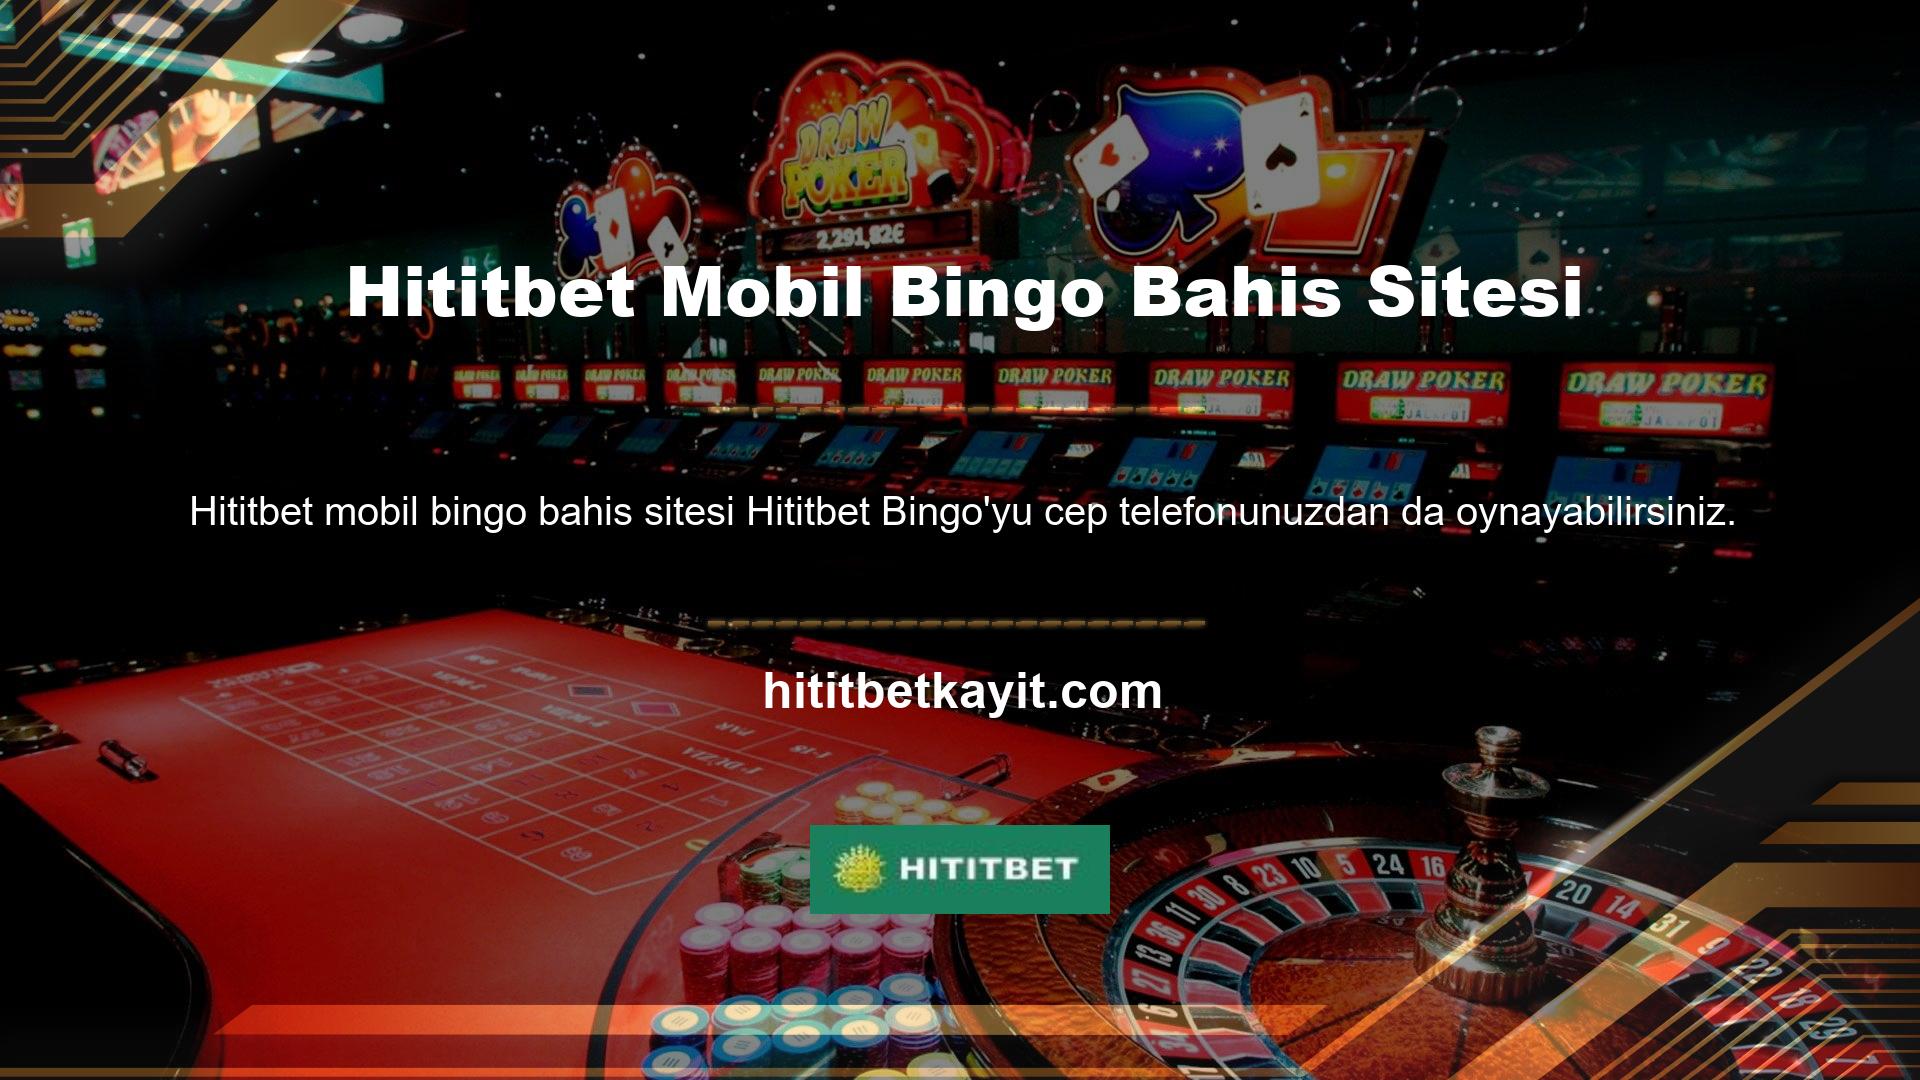 Üyeler Hititbet mobil bingo bahis bilgisayarlarının yanı sıra kendi yatırımları ile de bingo oyunları oynamaya başlayabilirler